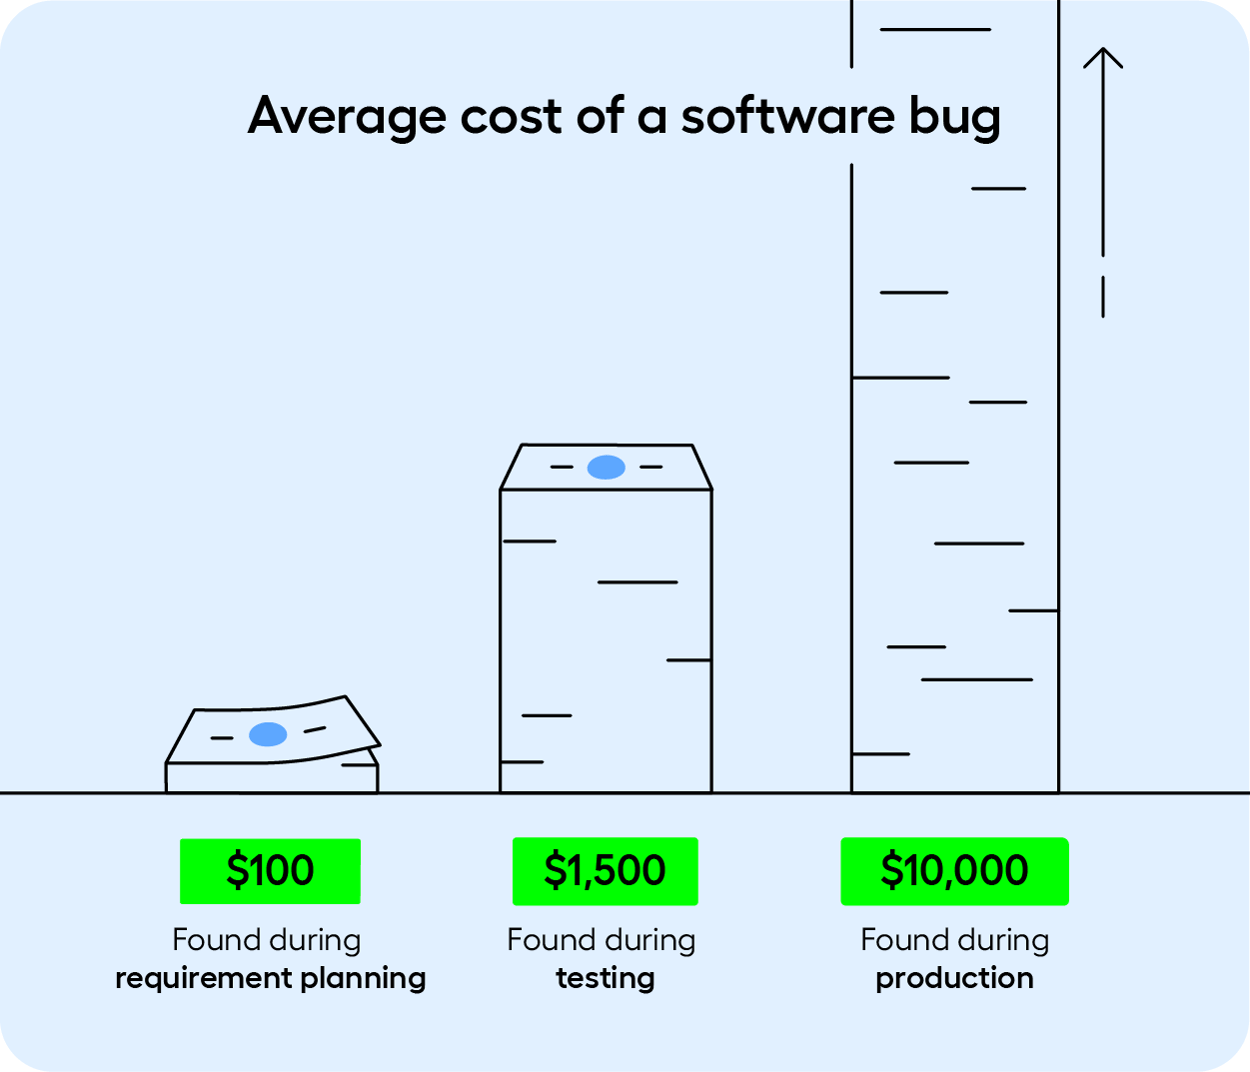 Averare cost of a software bug